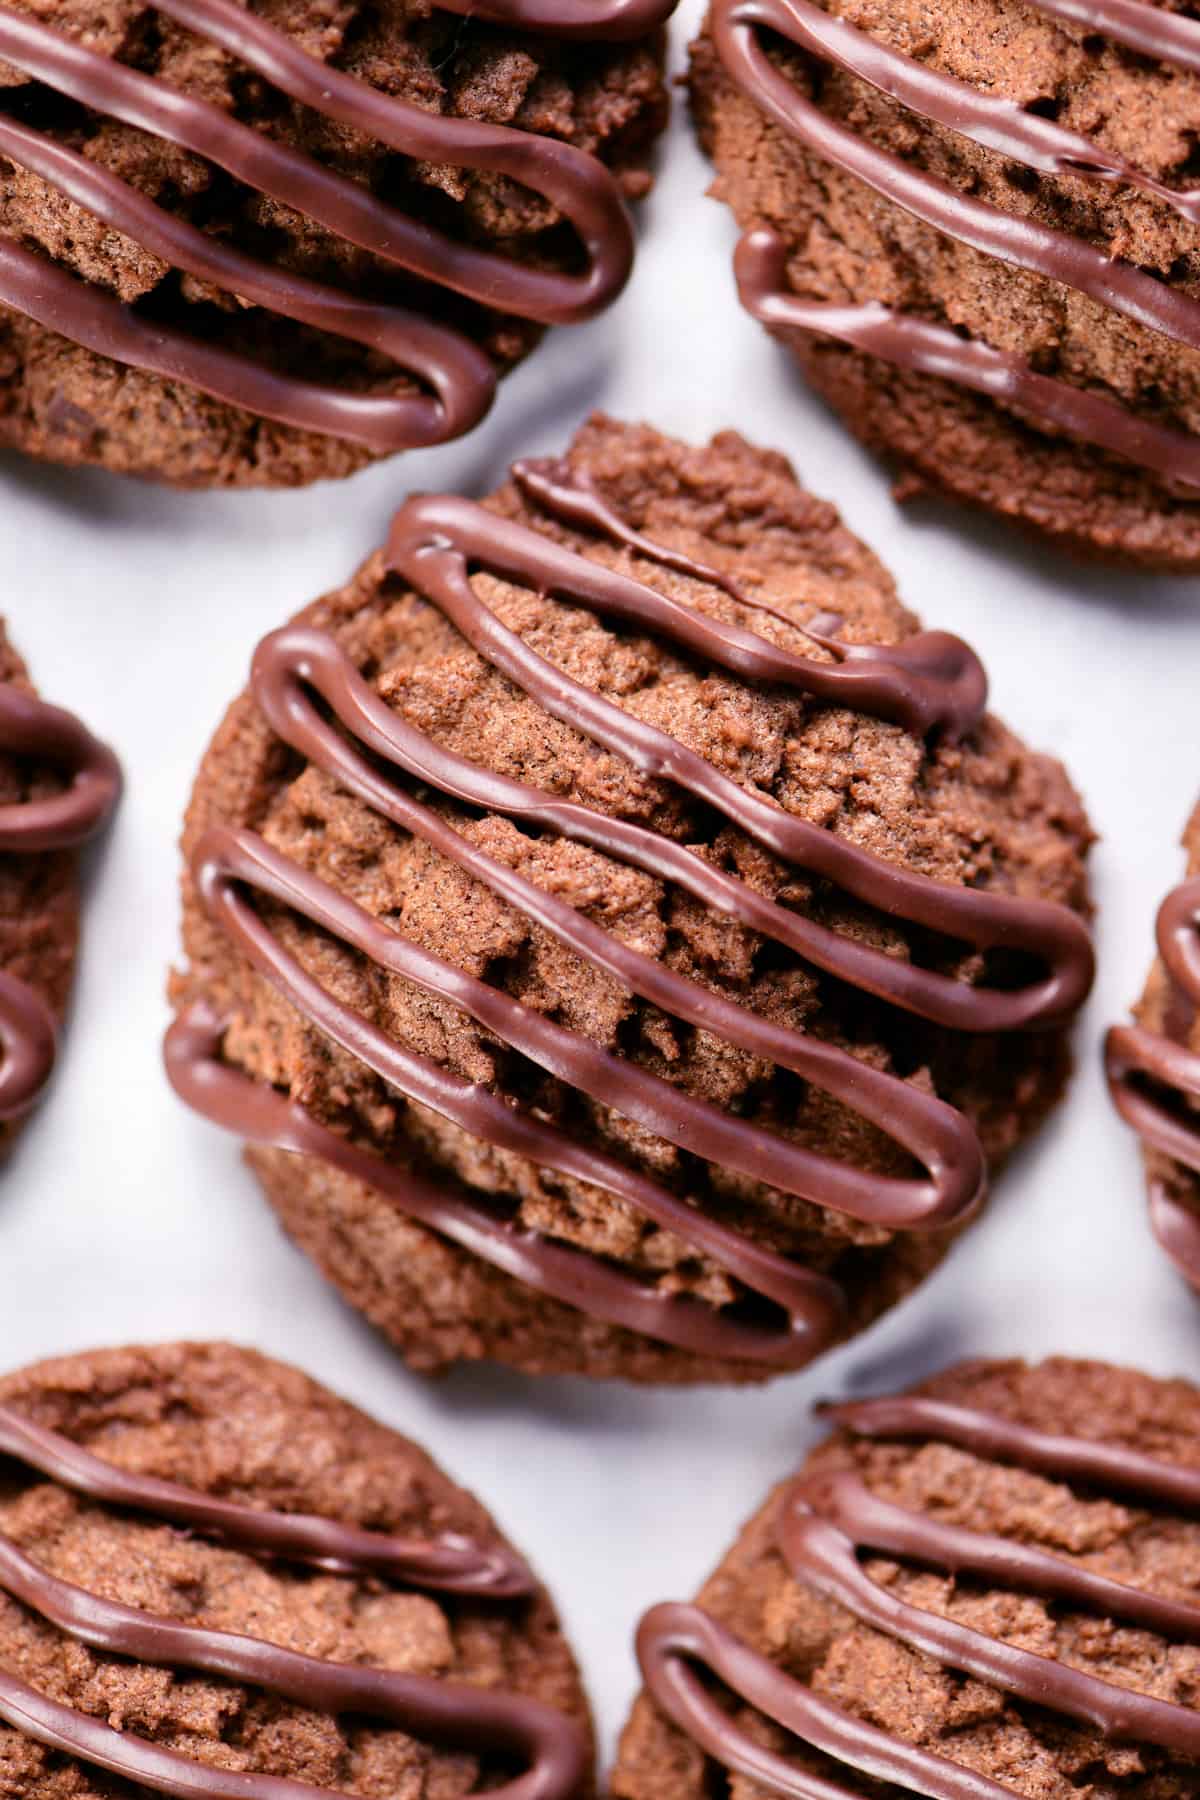 Triple chocolate cookies.